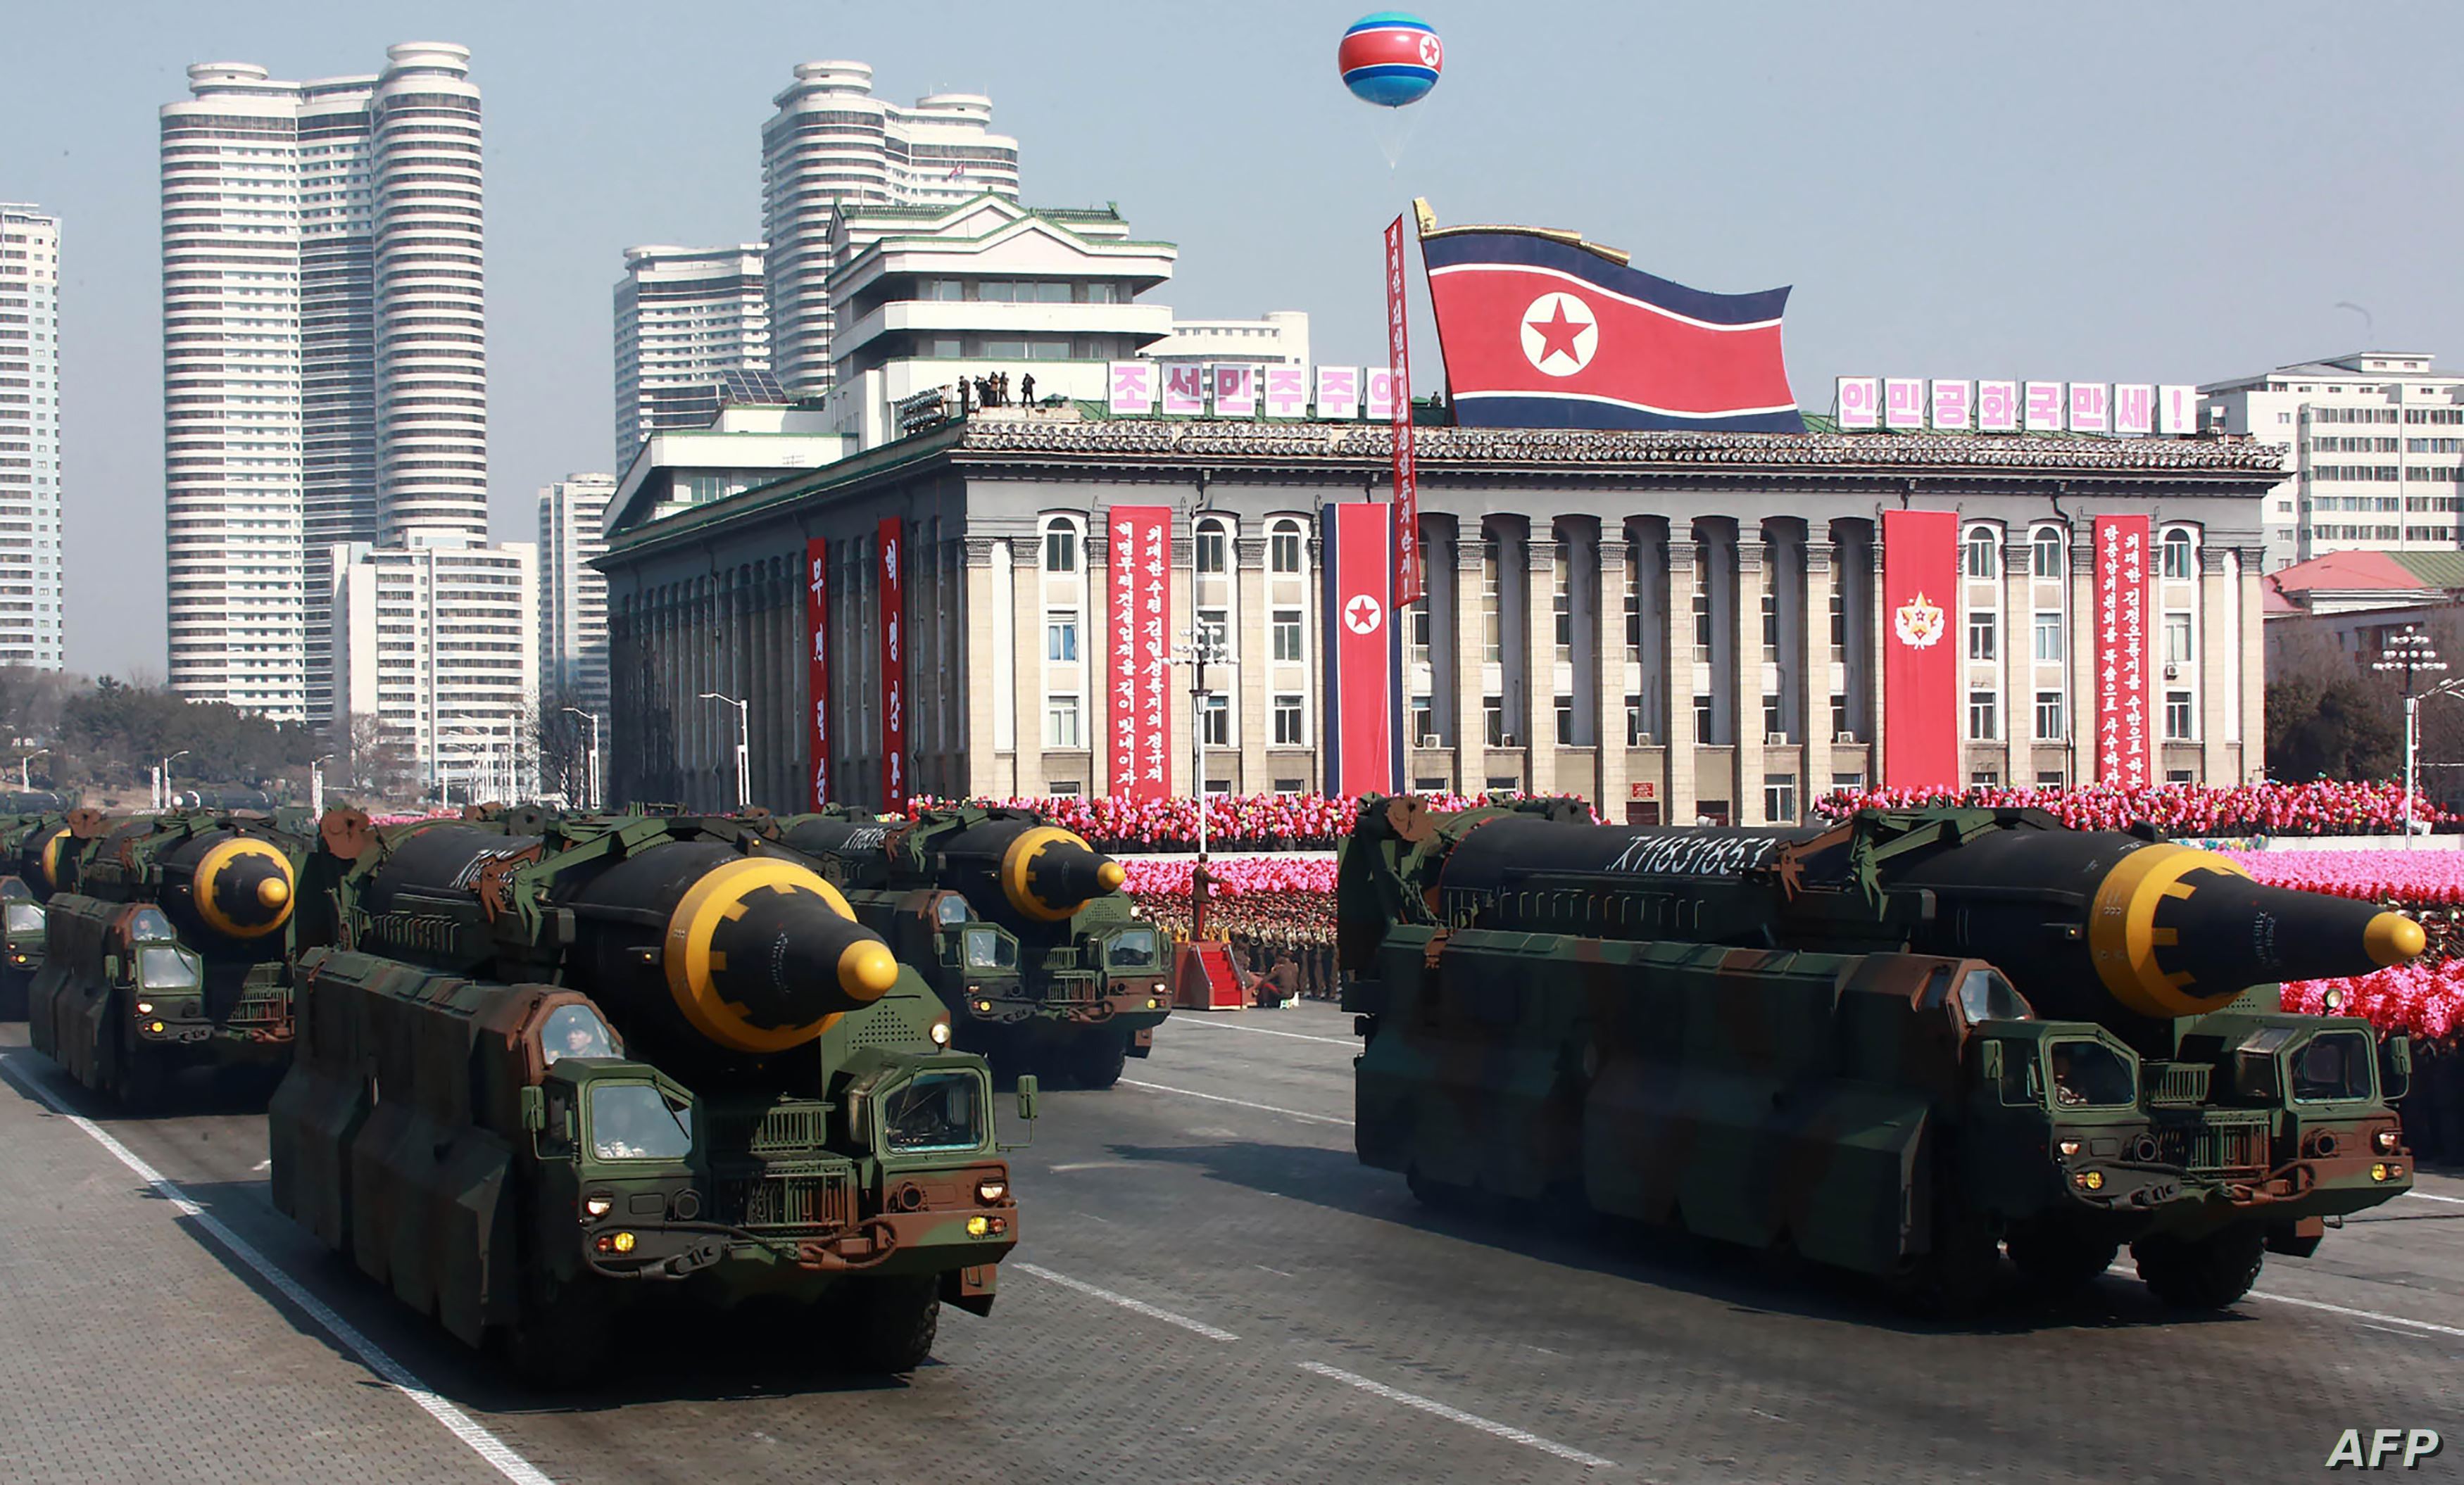 البيت الابيض: روسيا "تسعى في شكل حثيث" الى الحصول على مزيد من الأسلحة من كوريا الشمالية